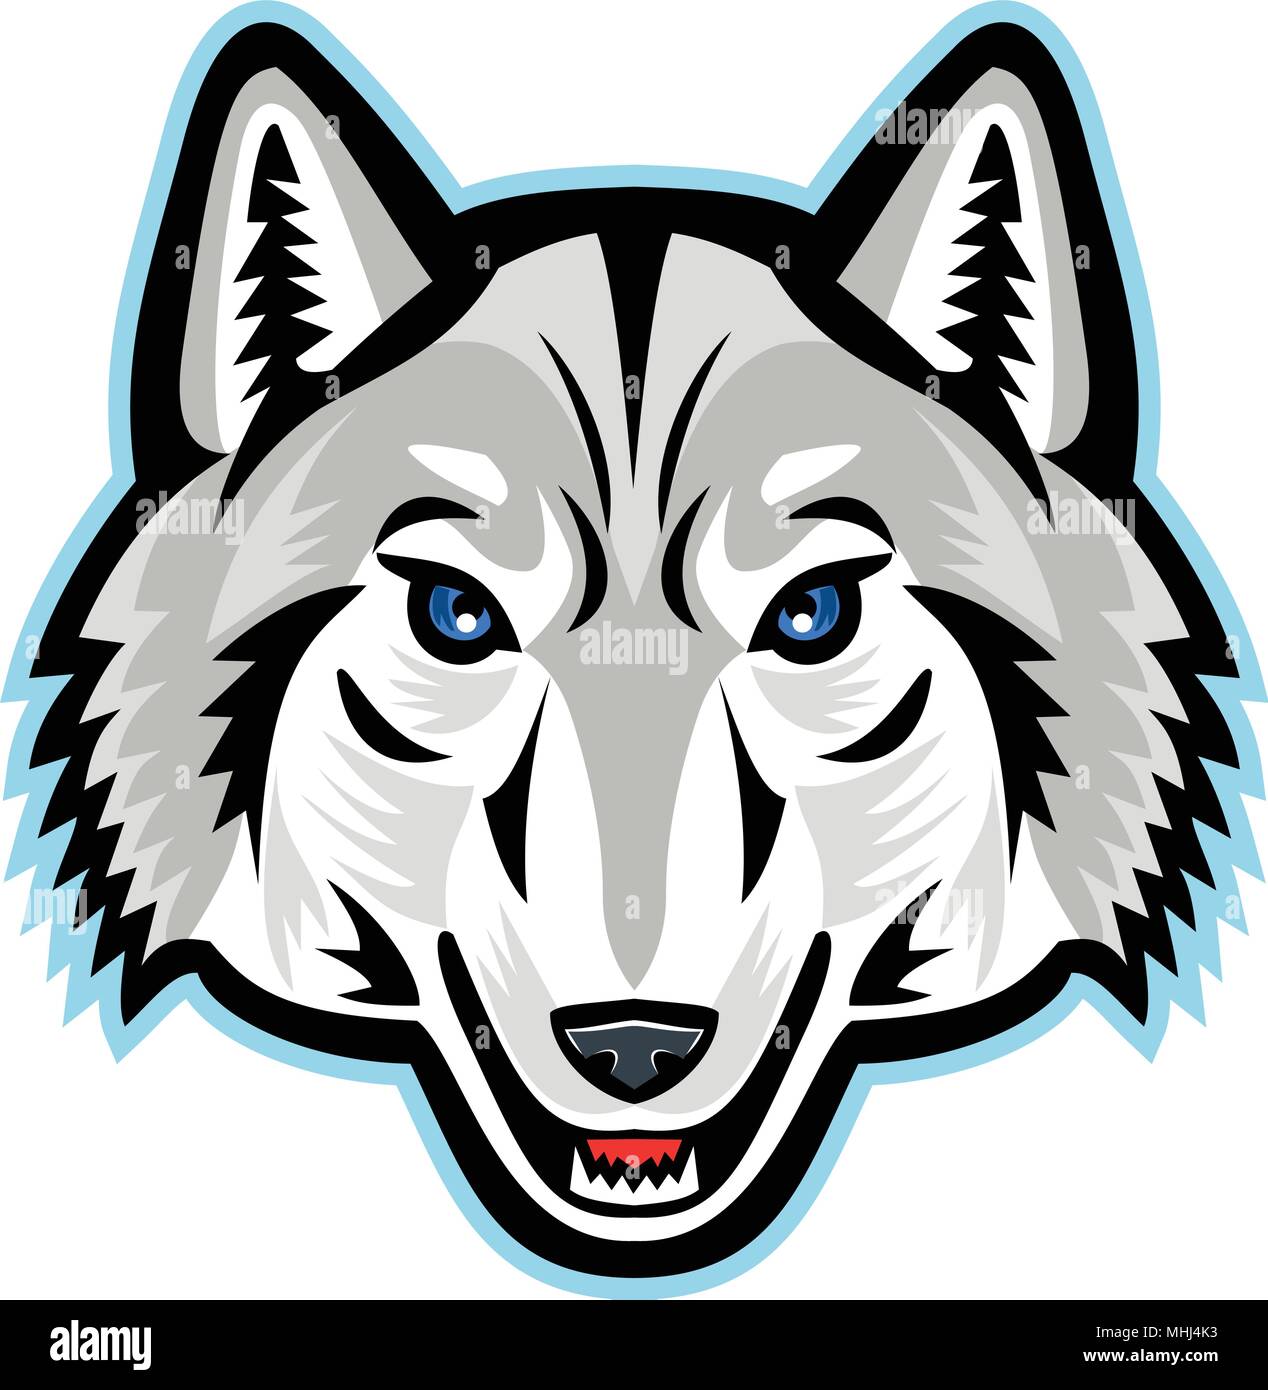 Icono de mascota ilustración de la cabeza de un lobo ártico, lobo blanco o lobo polar, una subespecie de lobo gris, visto la parte sobre fondo aislado en r Imagen